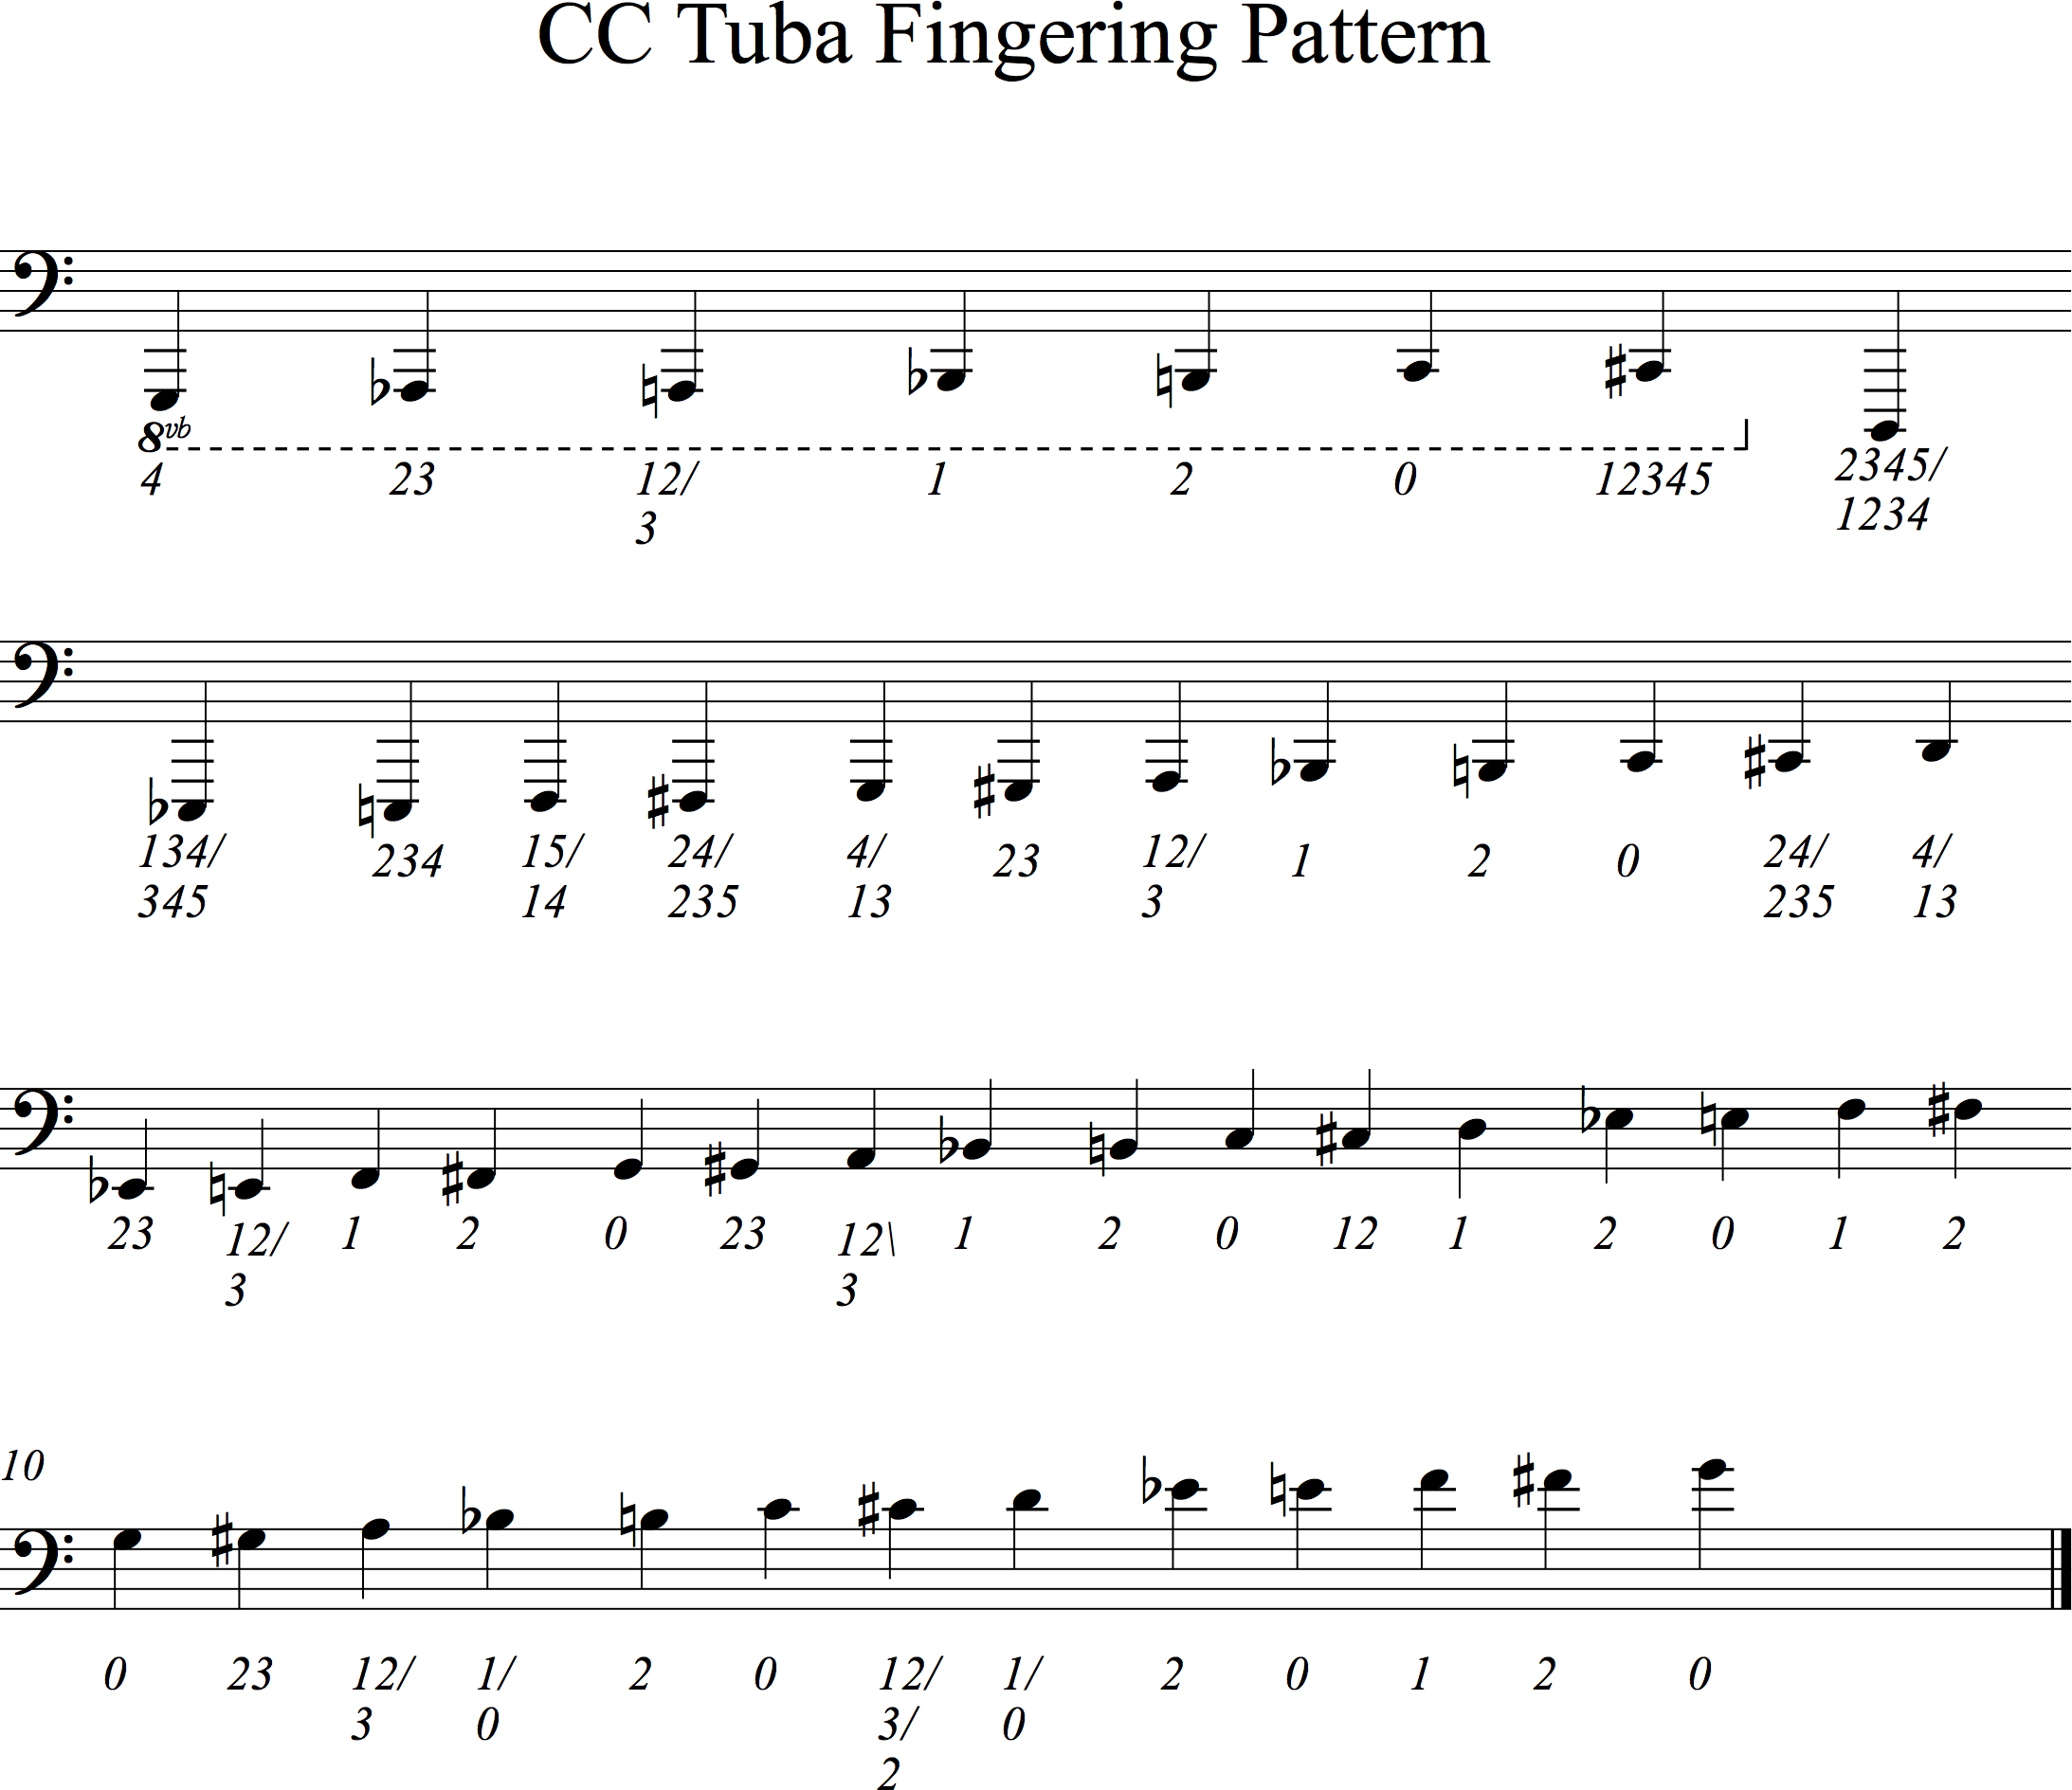 F Tuba Finger Chart